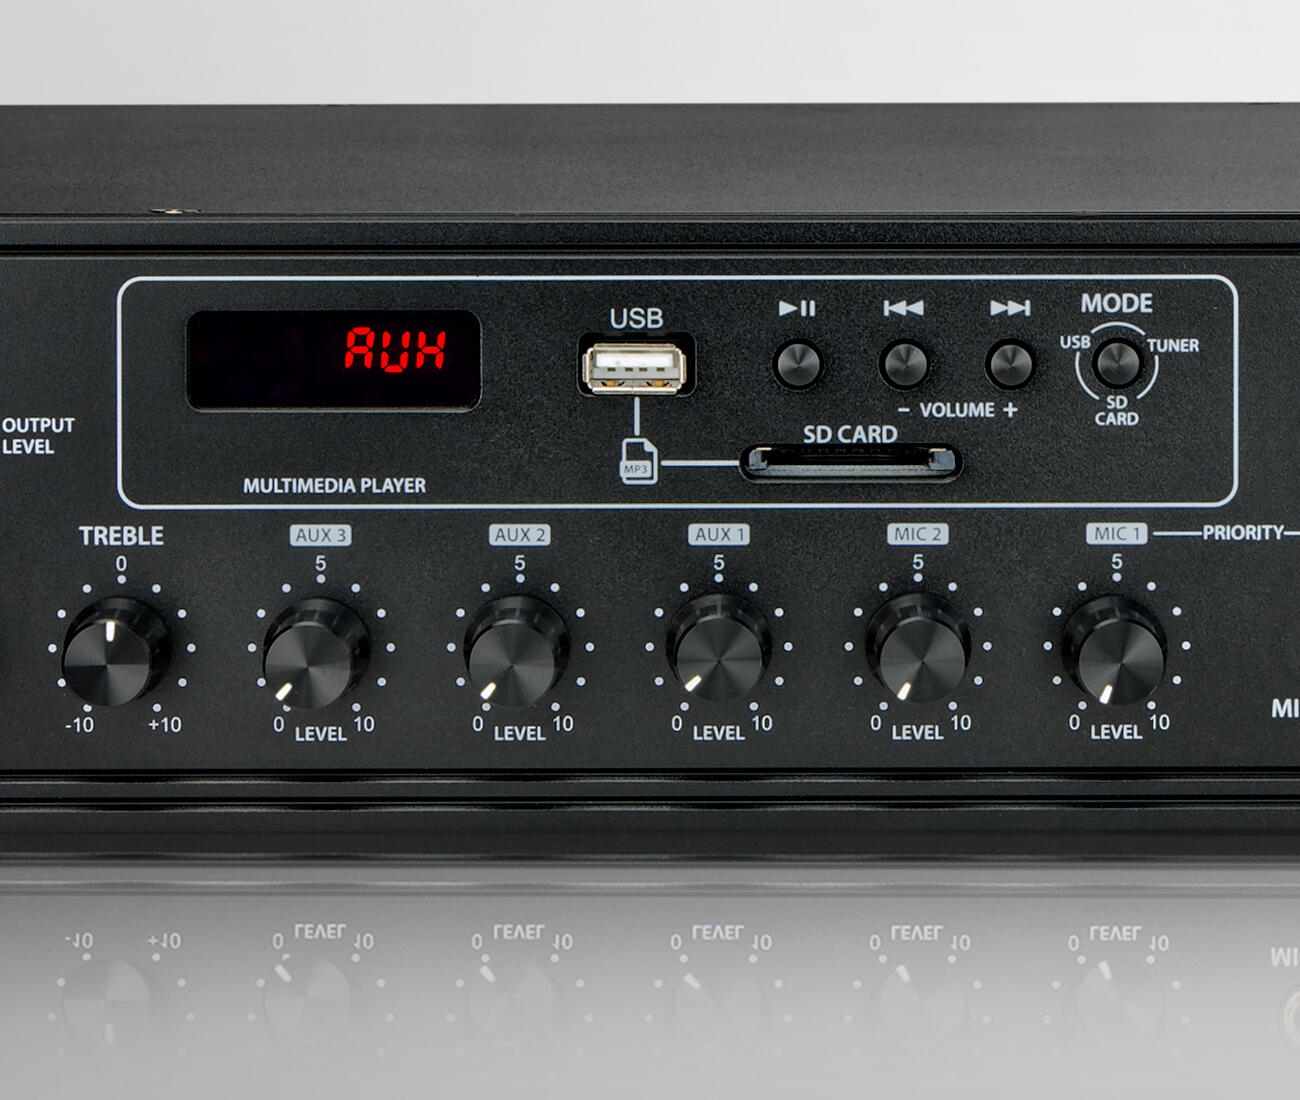 NEXT-Audiocom-MX350-Išsami informacija